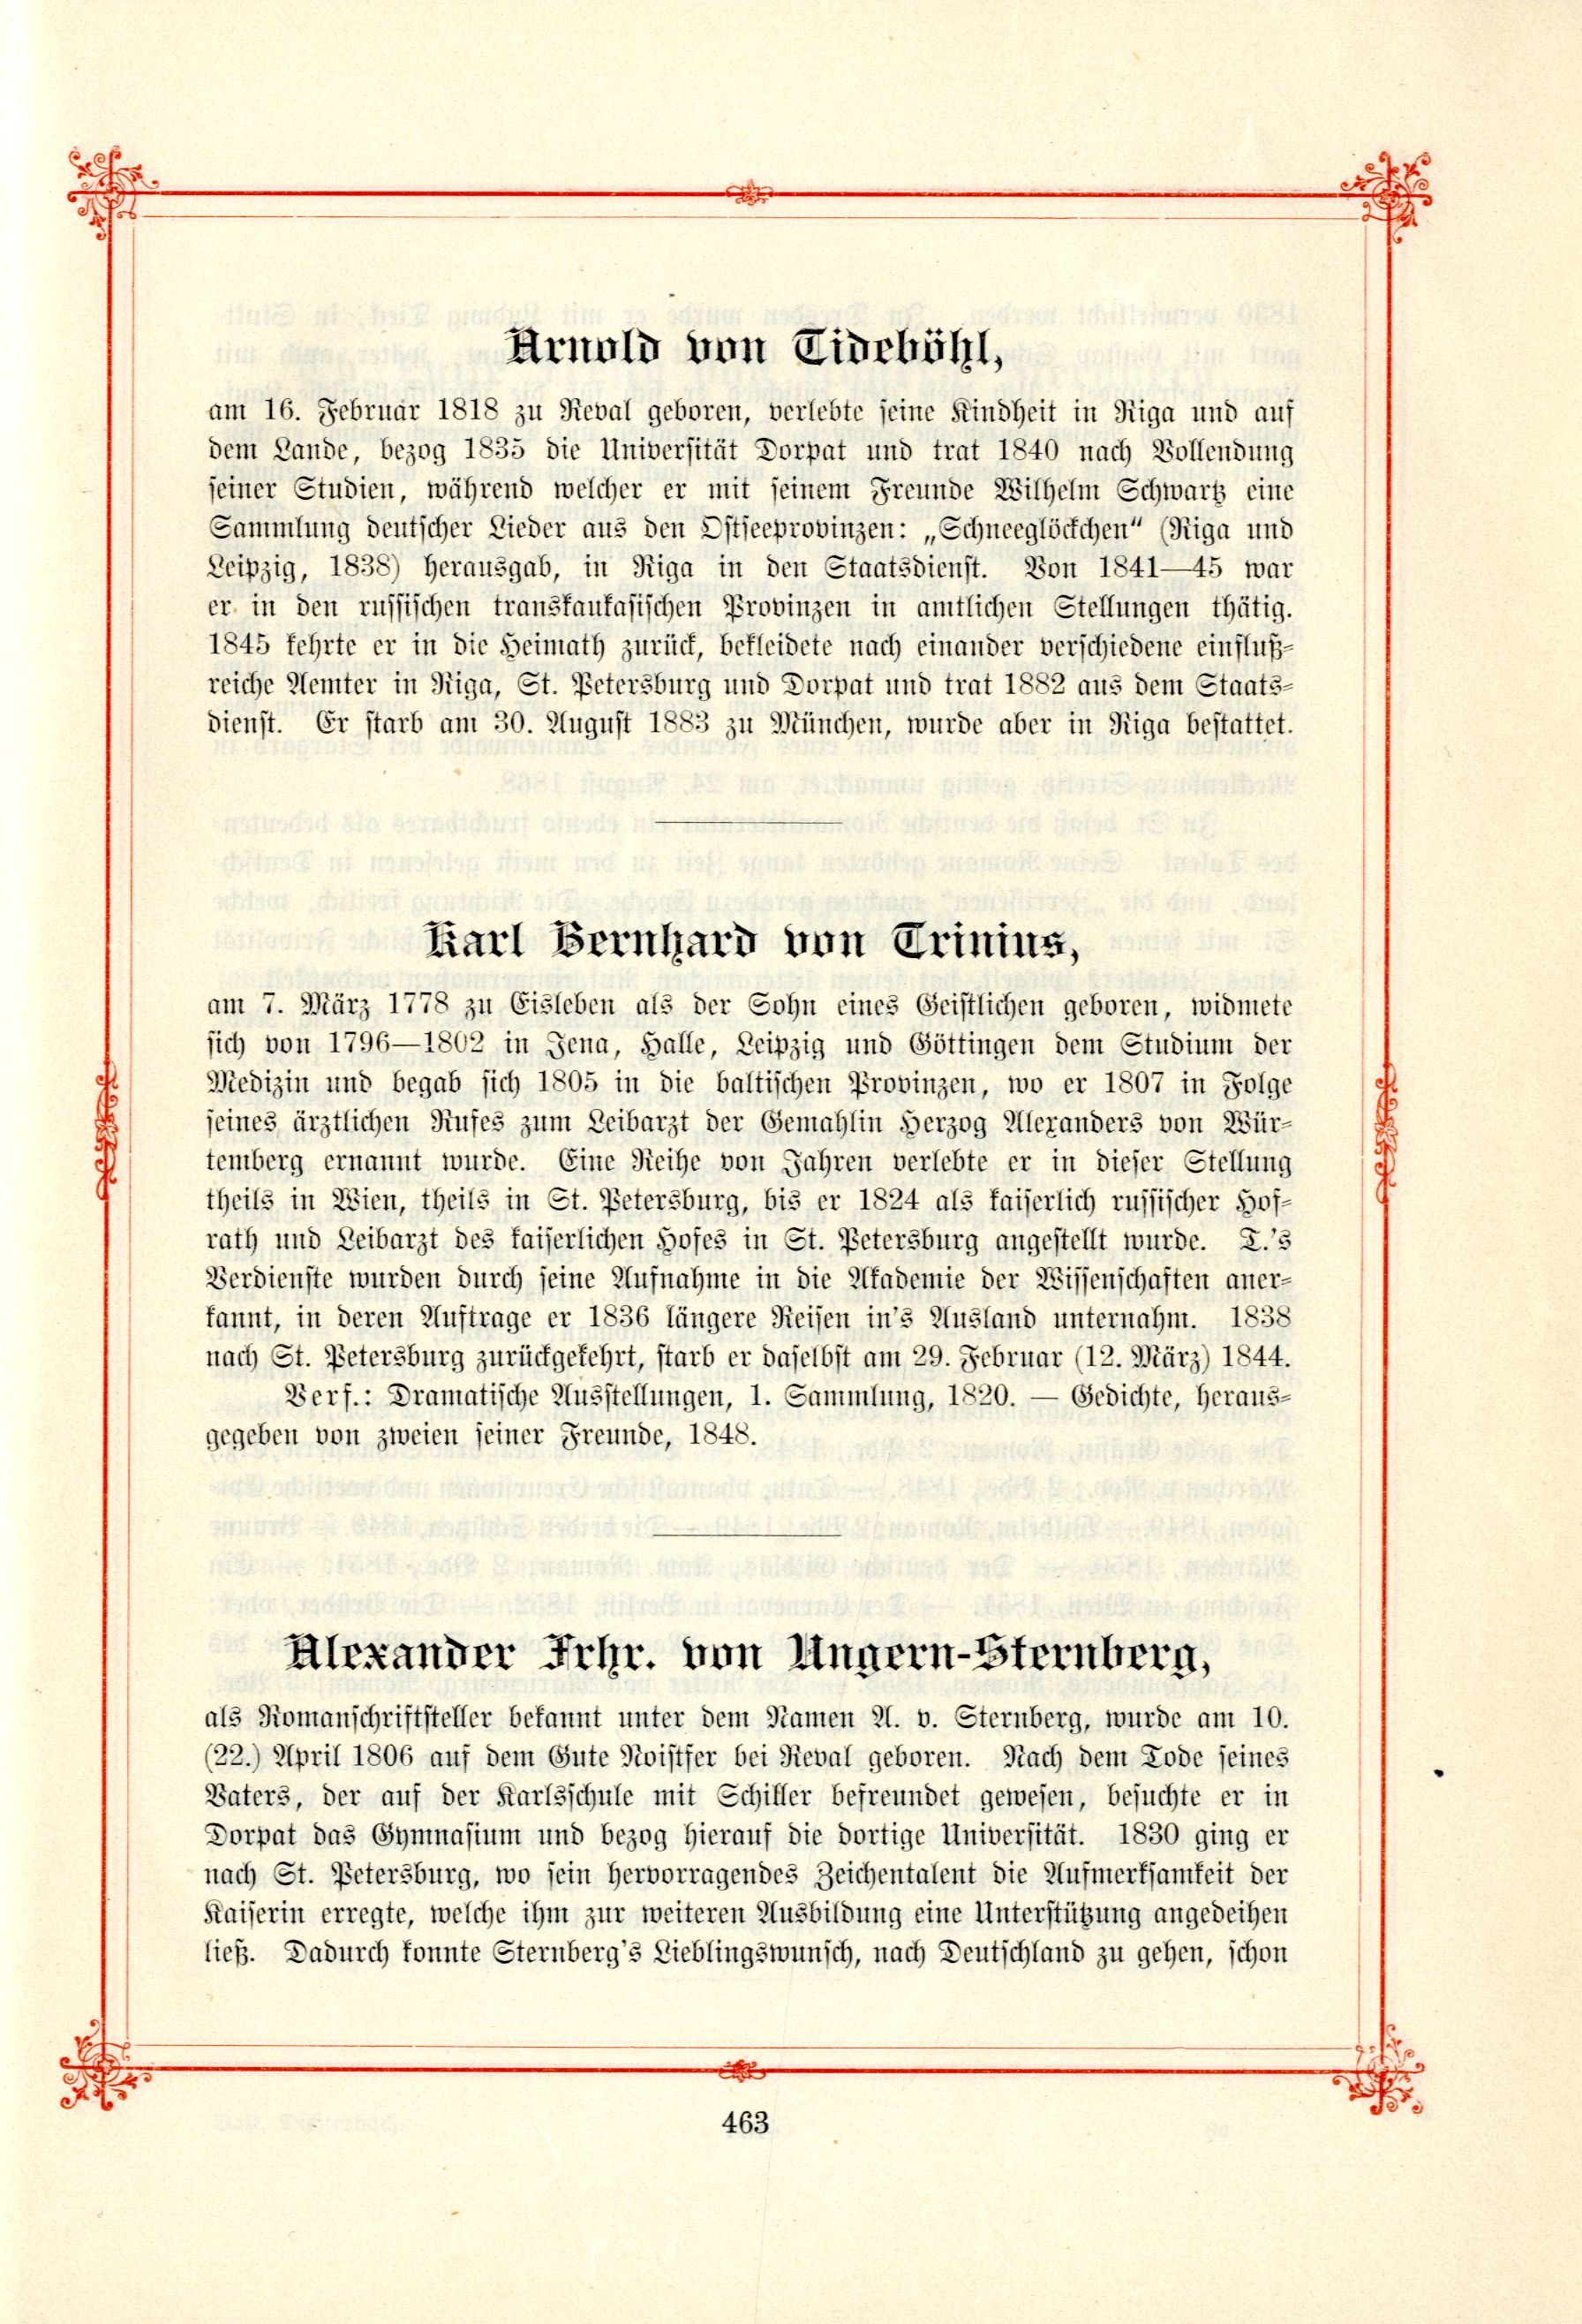 Alexander Frhr. von Ungern-Sternberg (1895) | 1. (463) Põhitekst